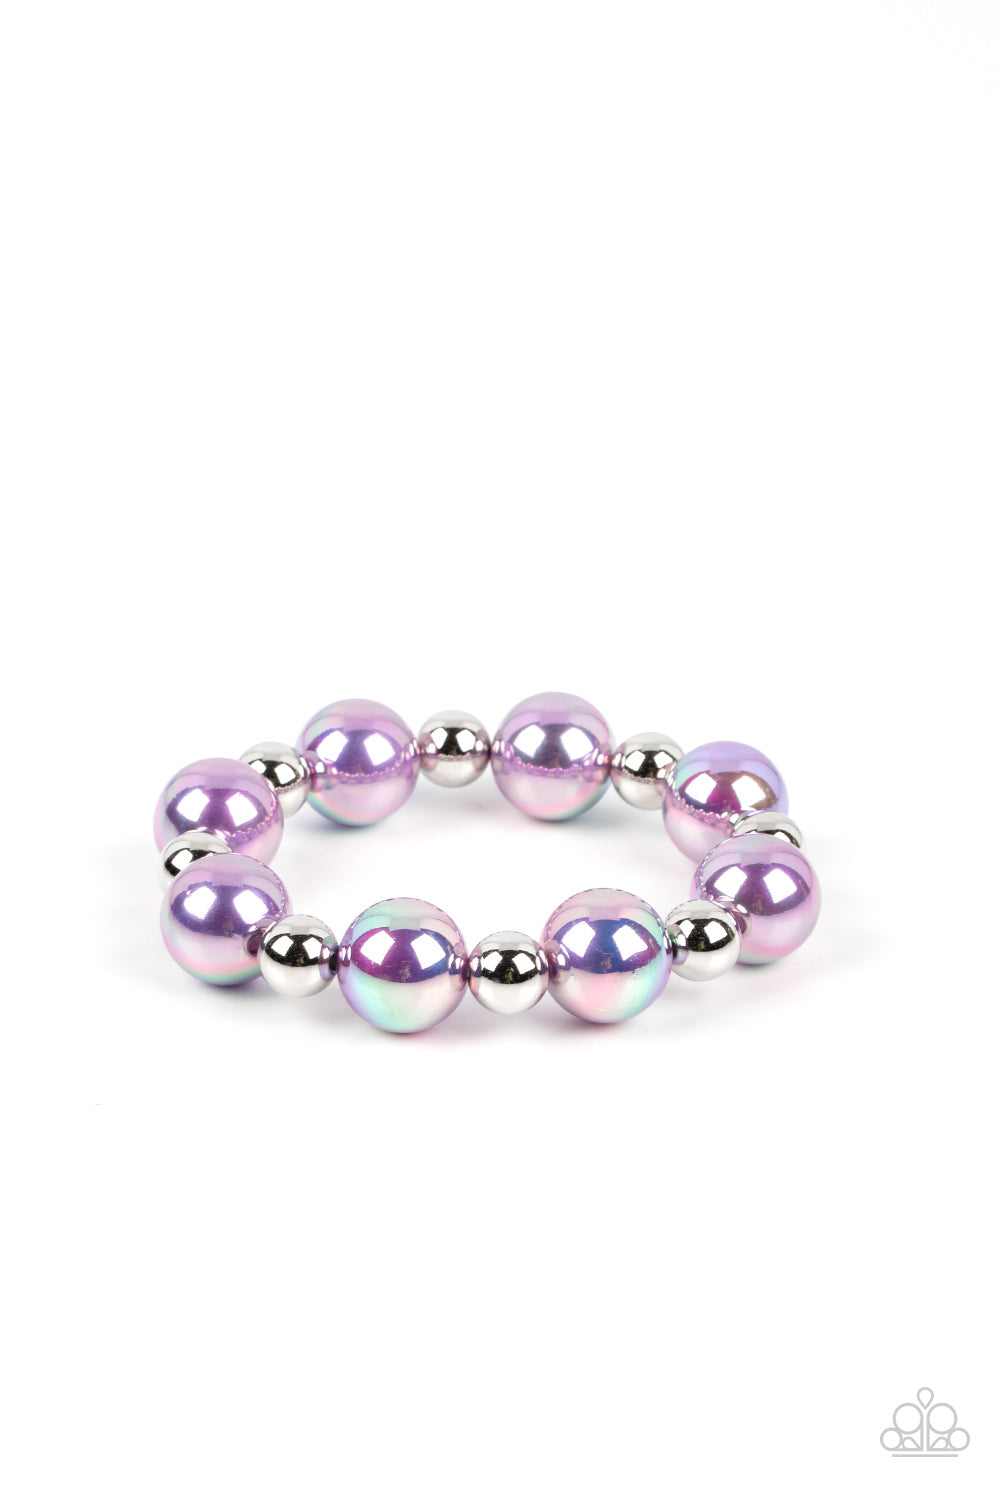 Dreamscape Escape Purple Necklace & Bracelet Set - Paparazzi Accessories